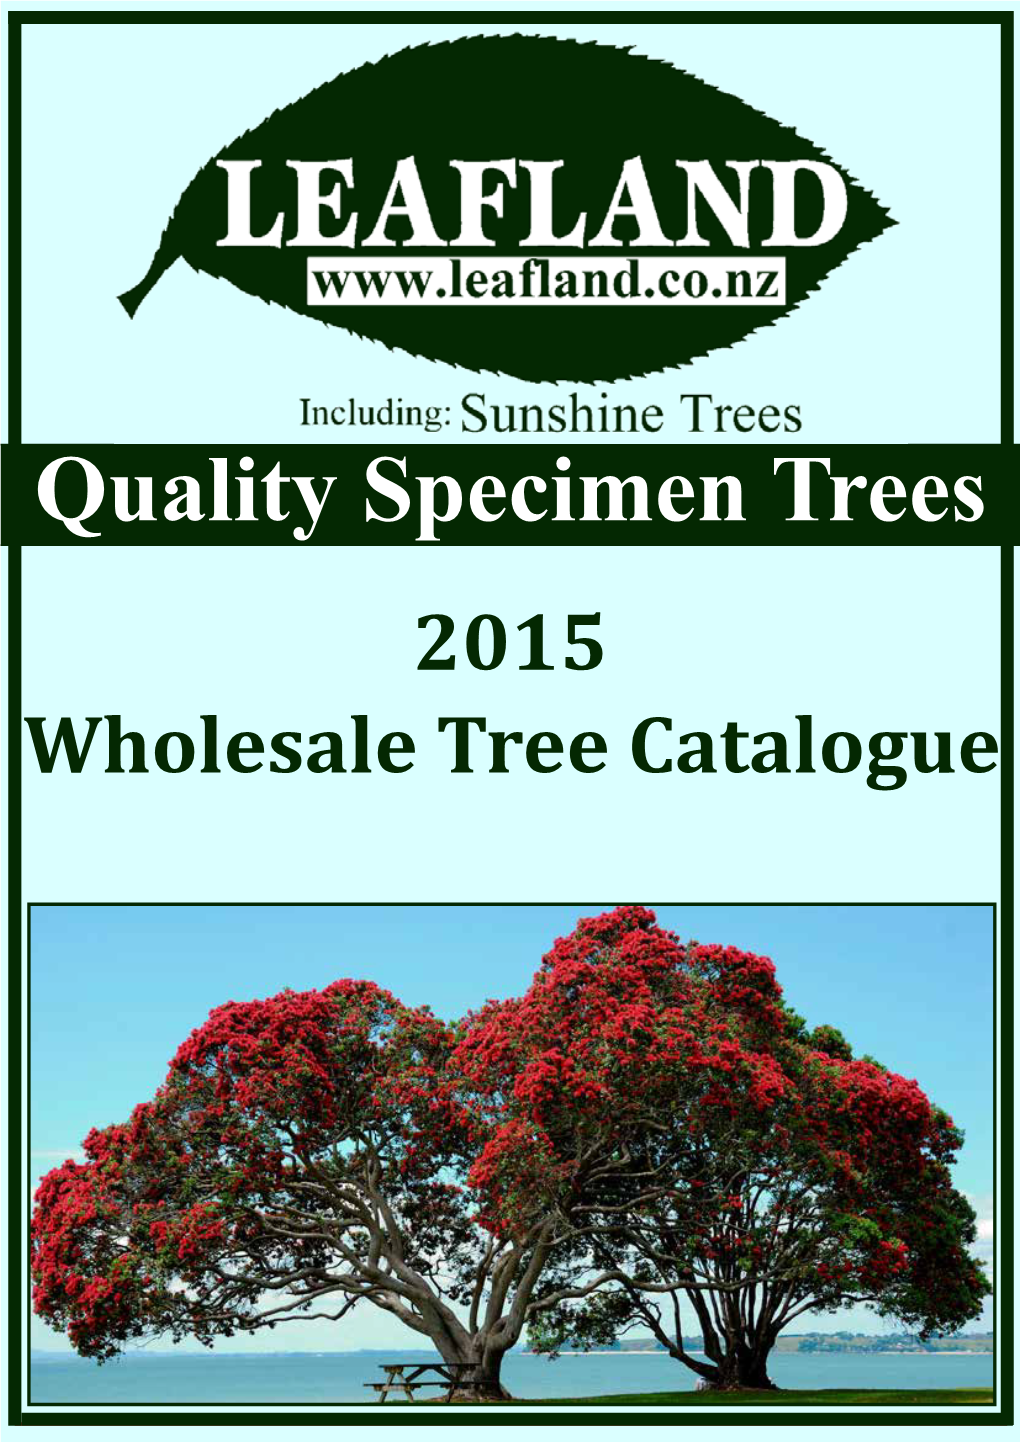 Quality Specimen Trees 2015 Wholesale Tree Catalogue Dear Valued Customer February 2015